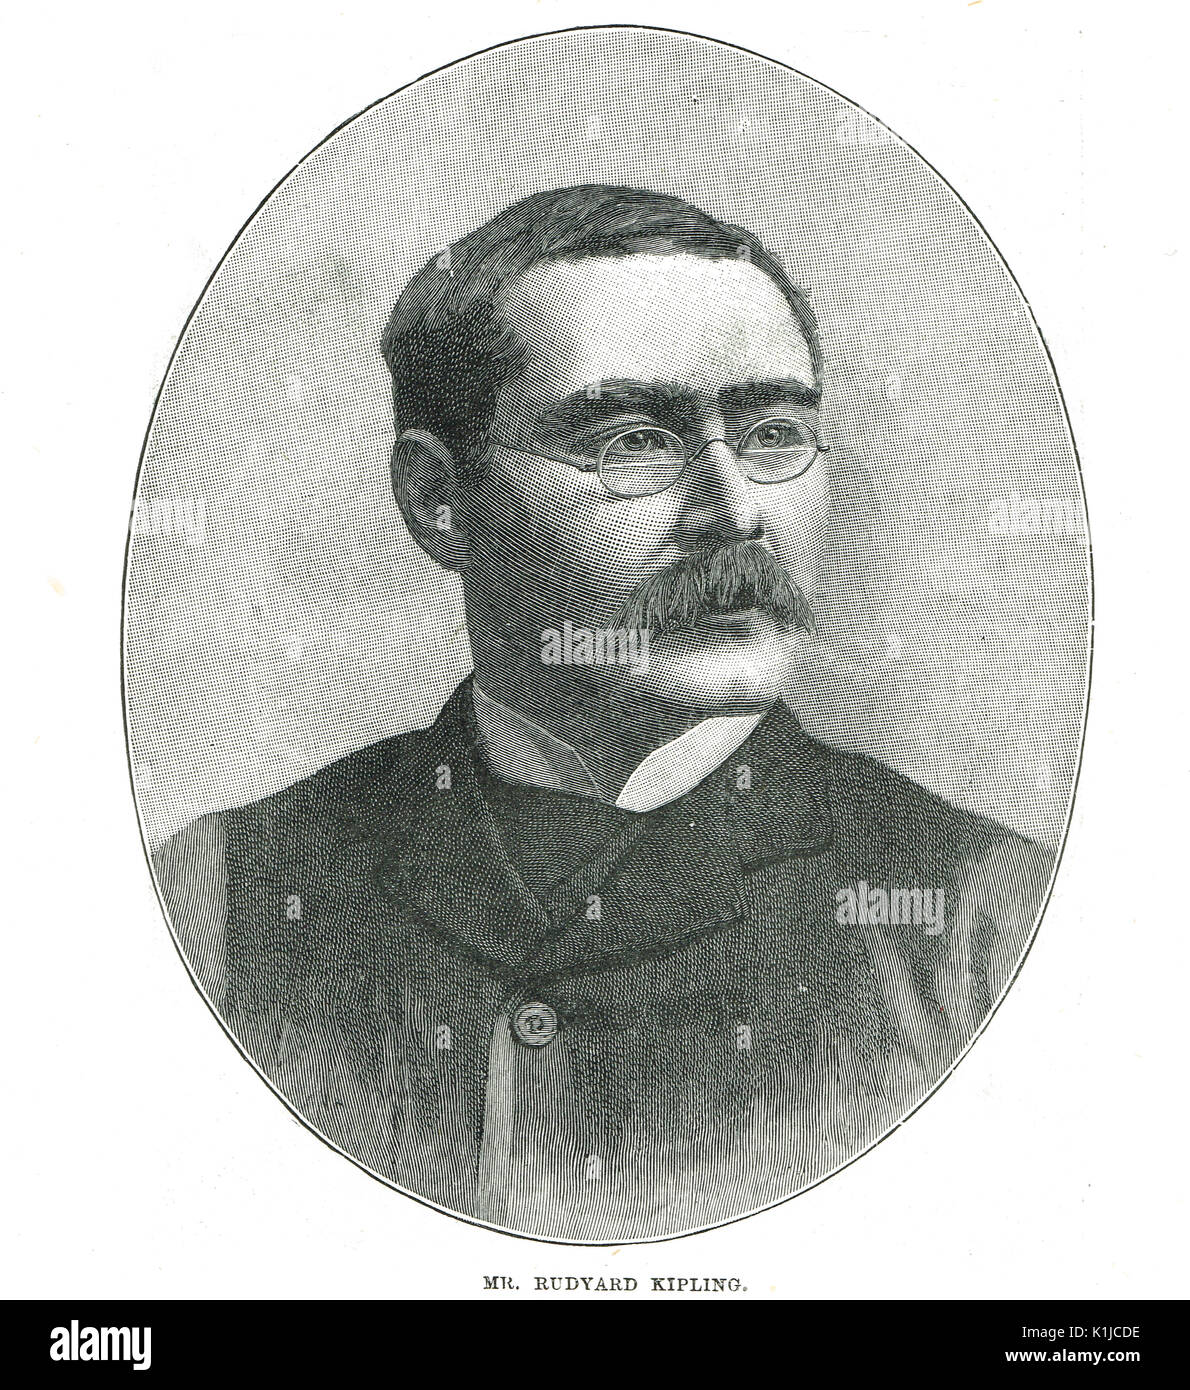 Rudyard Kipling Dichter und Schriftsteller, 1895 Stockfotografie - Alamy